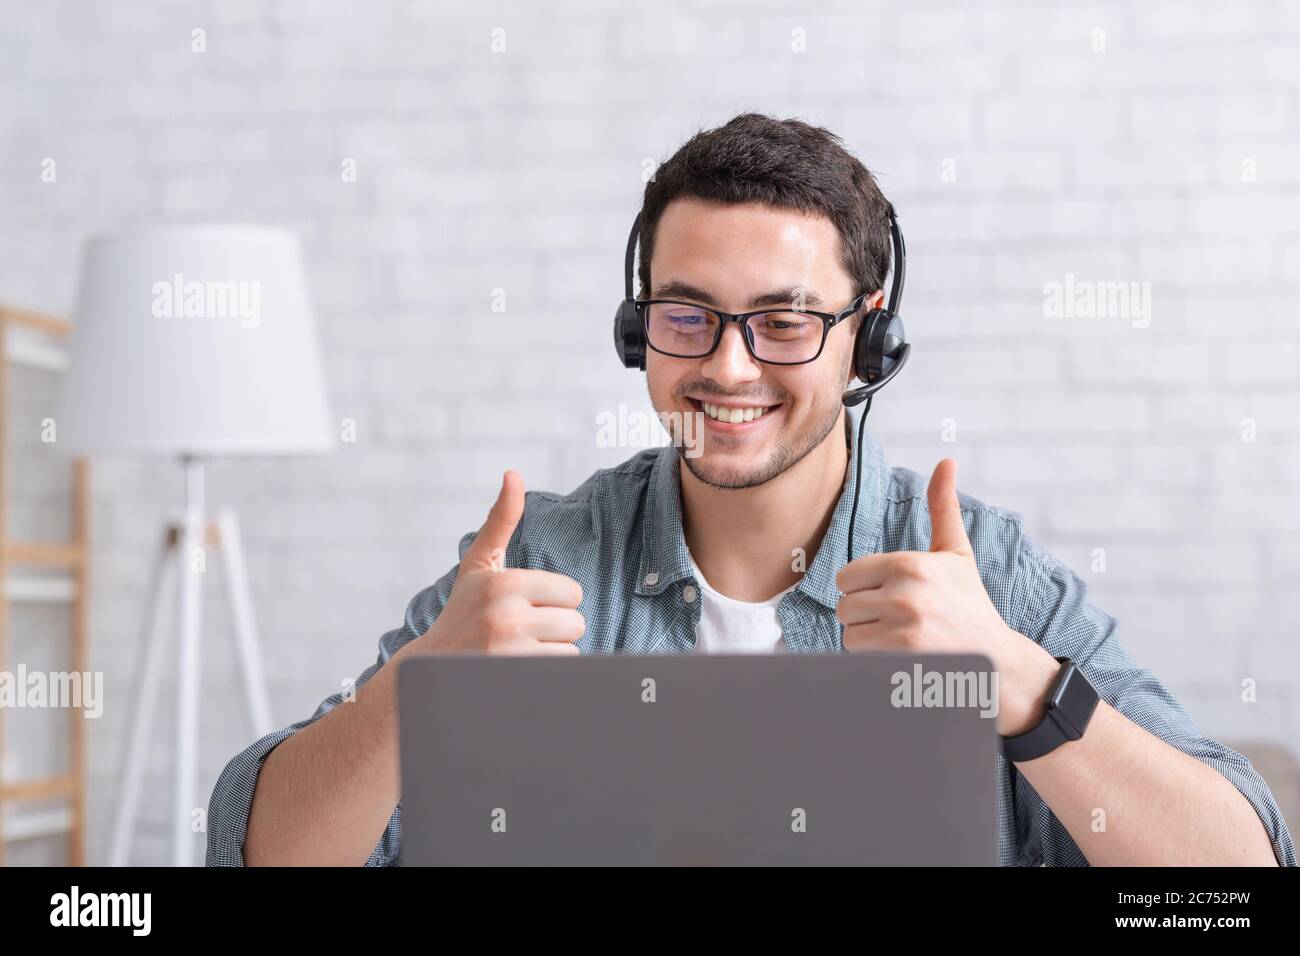 Un ragazzo sorridente con gli occhiali punta le dita verso l'alto e guarda il computer portatile nell'interno del salotto Foto Stock